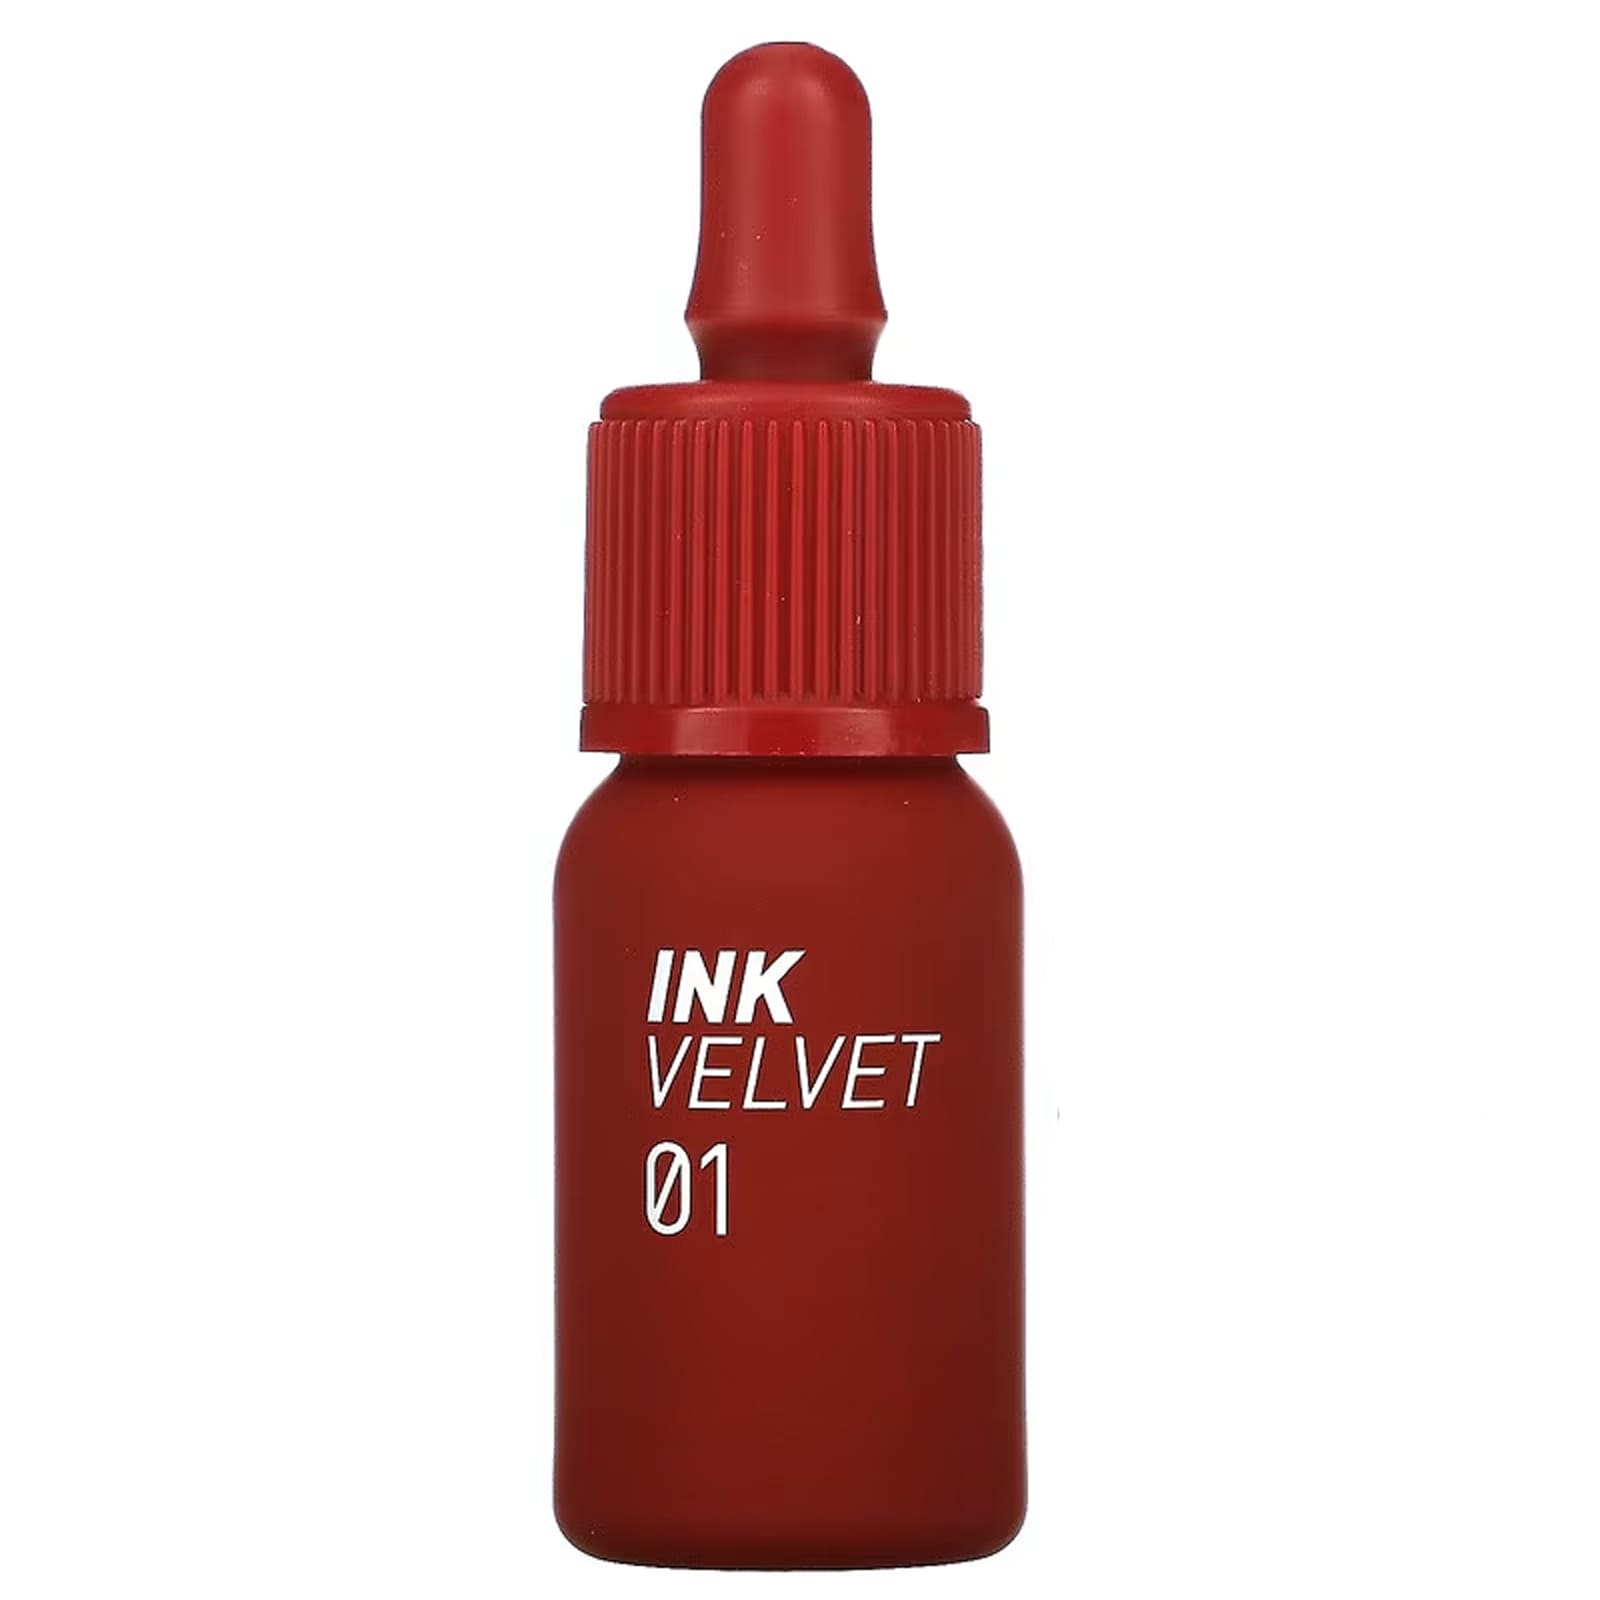 Тинт Peripera Ink Velvet для губ, 4 г peripera тинт для губ ink velvet 32 красная фуксия 4 г 0 14 унции